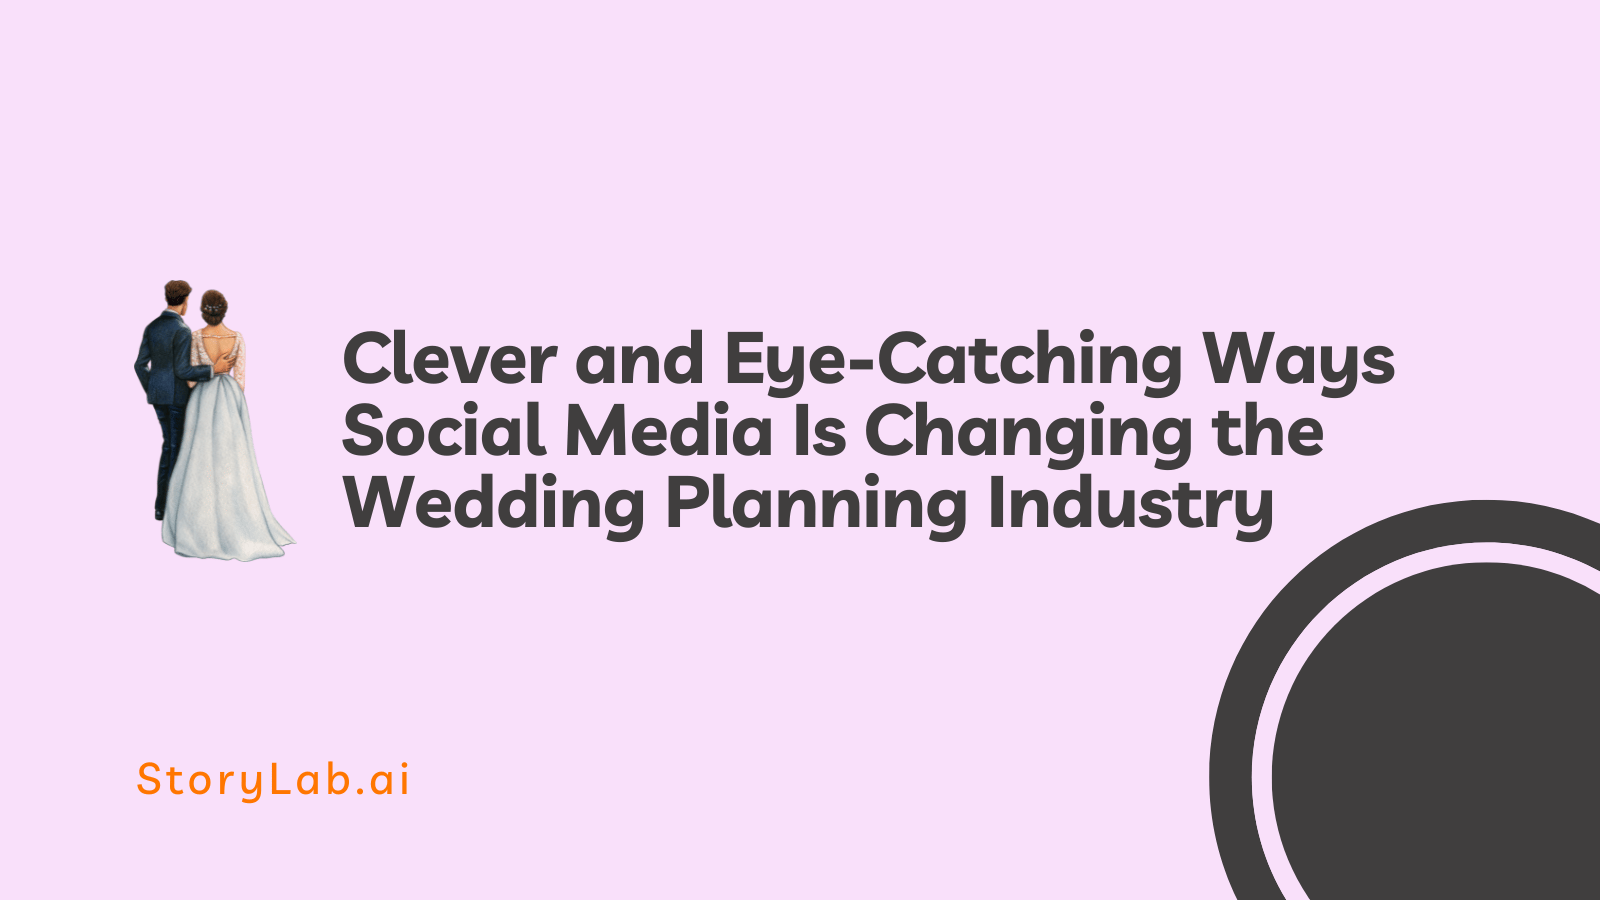 Modi intelligenti e accattivanti che i social media stanno cambiando il settore della pianificazione dei matrimoni